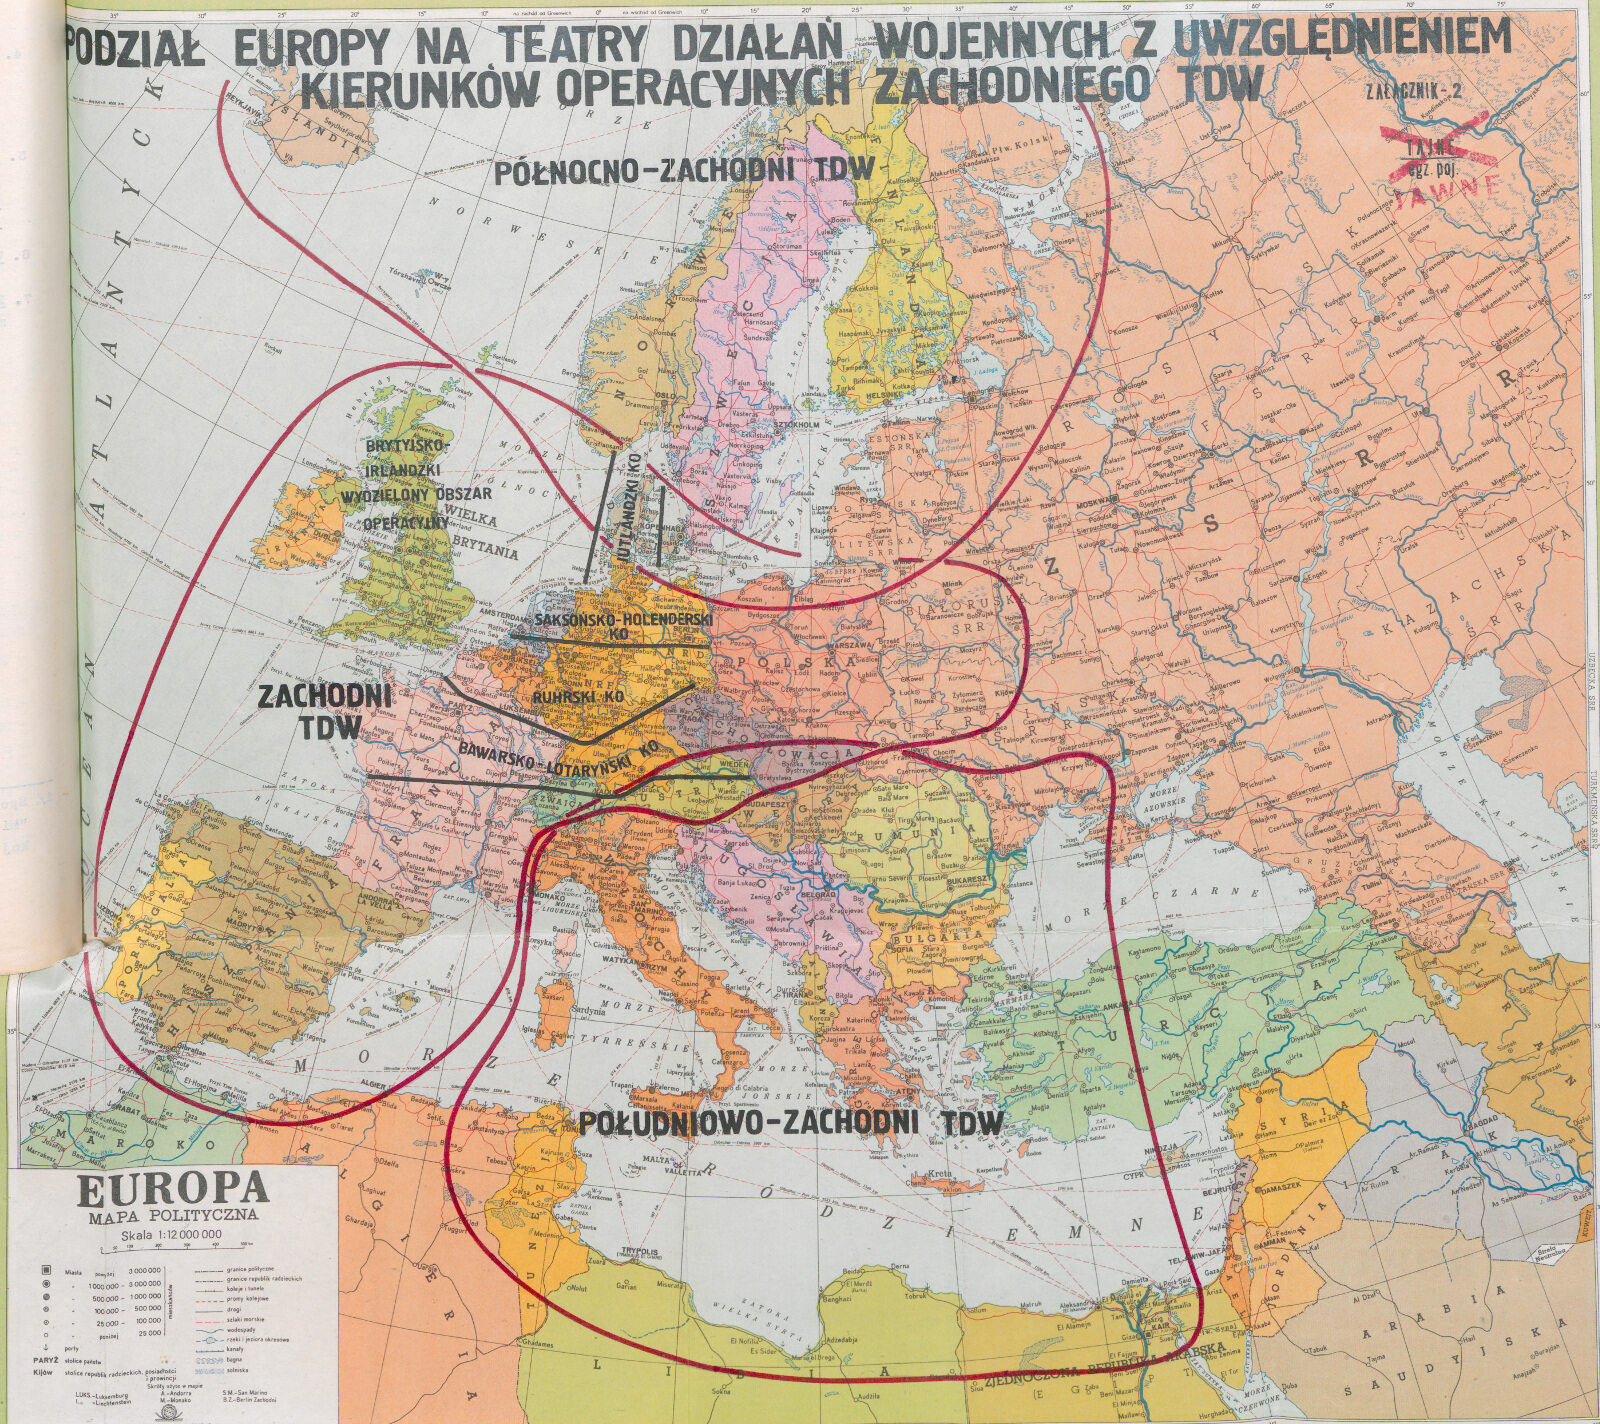 Sowiecka mapa teatrów wojennych w Europie